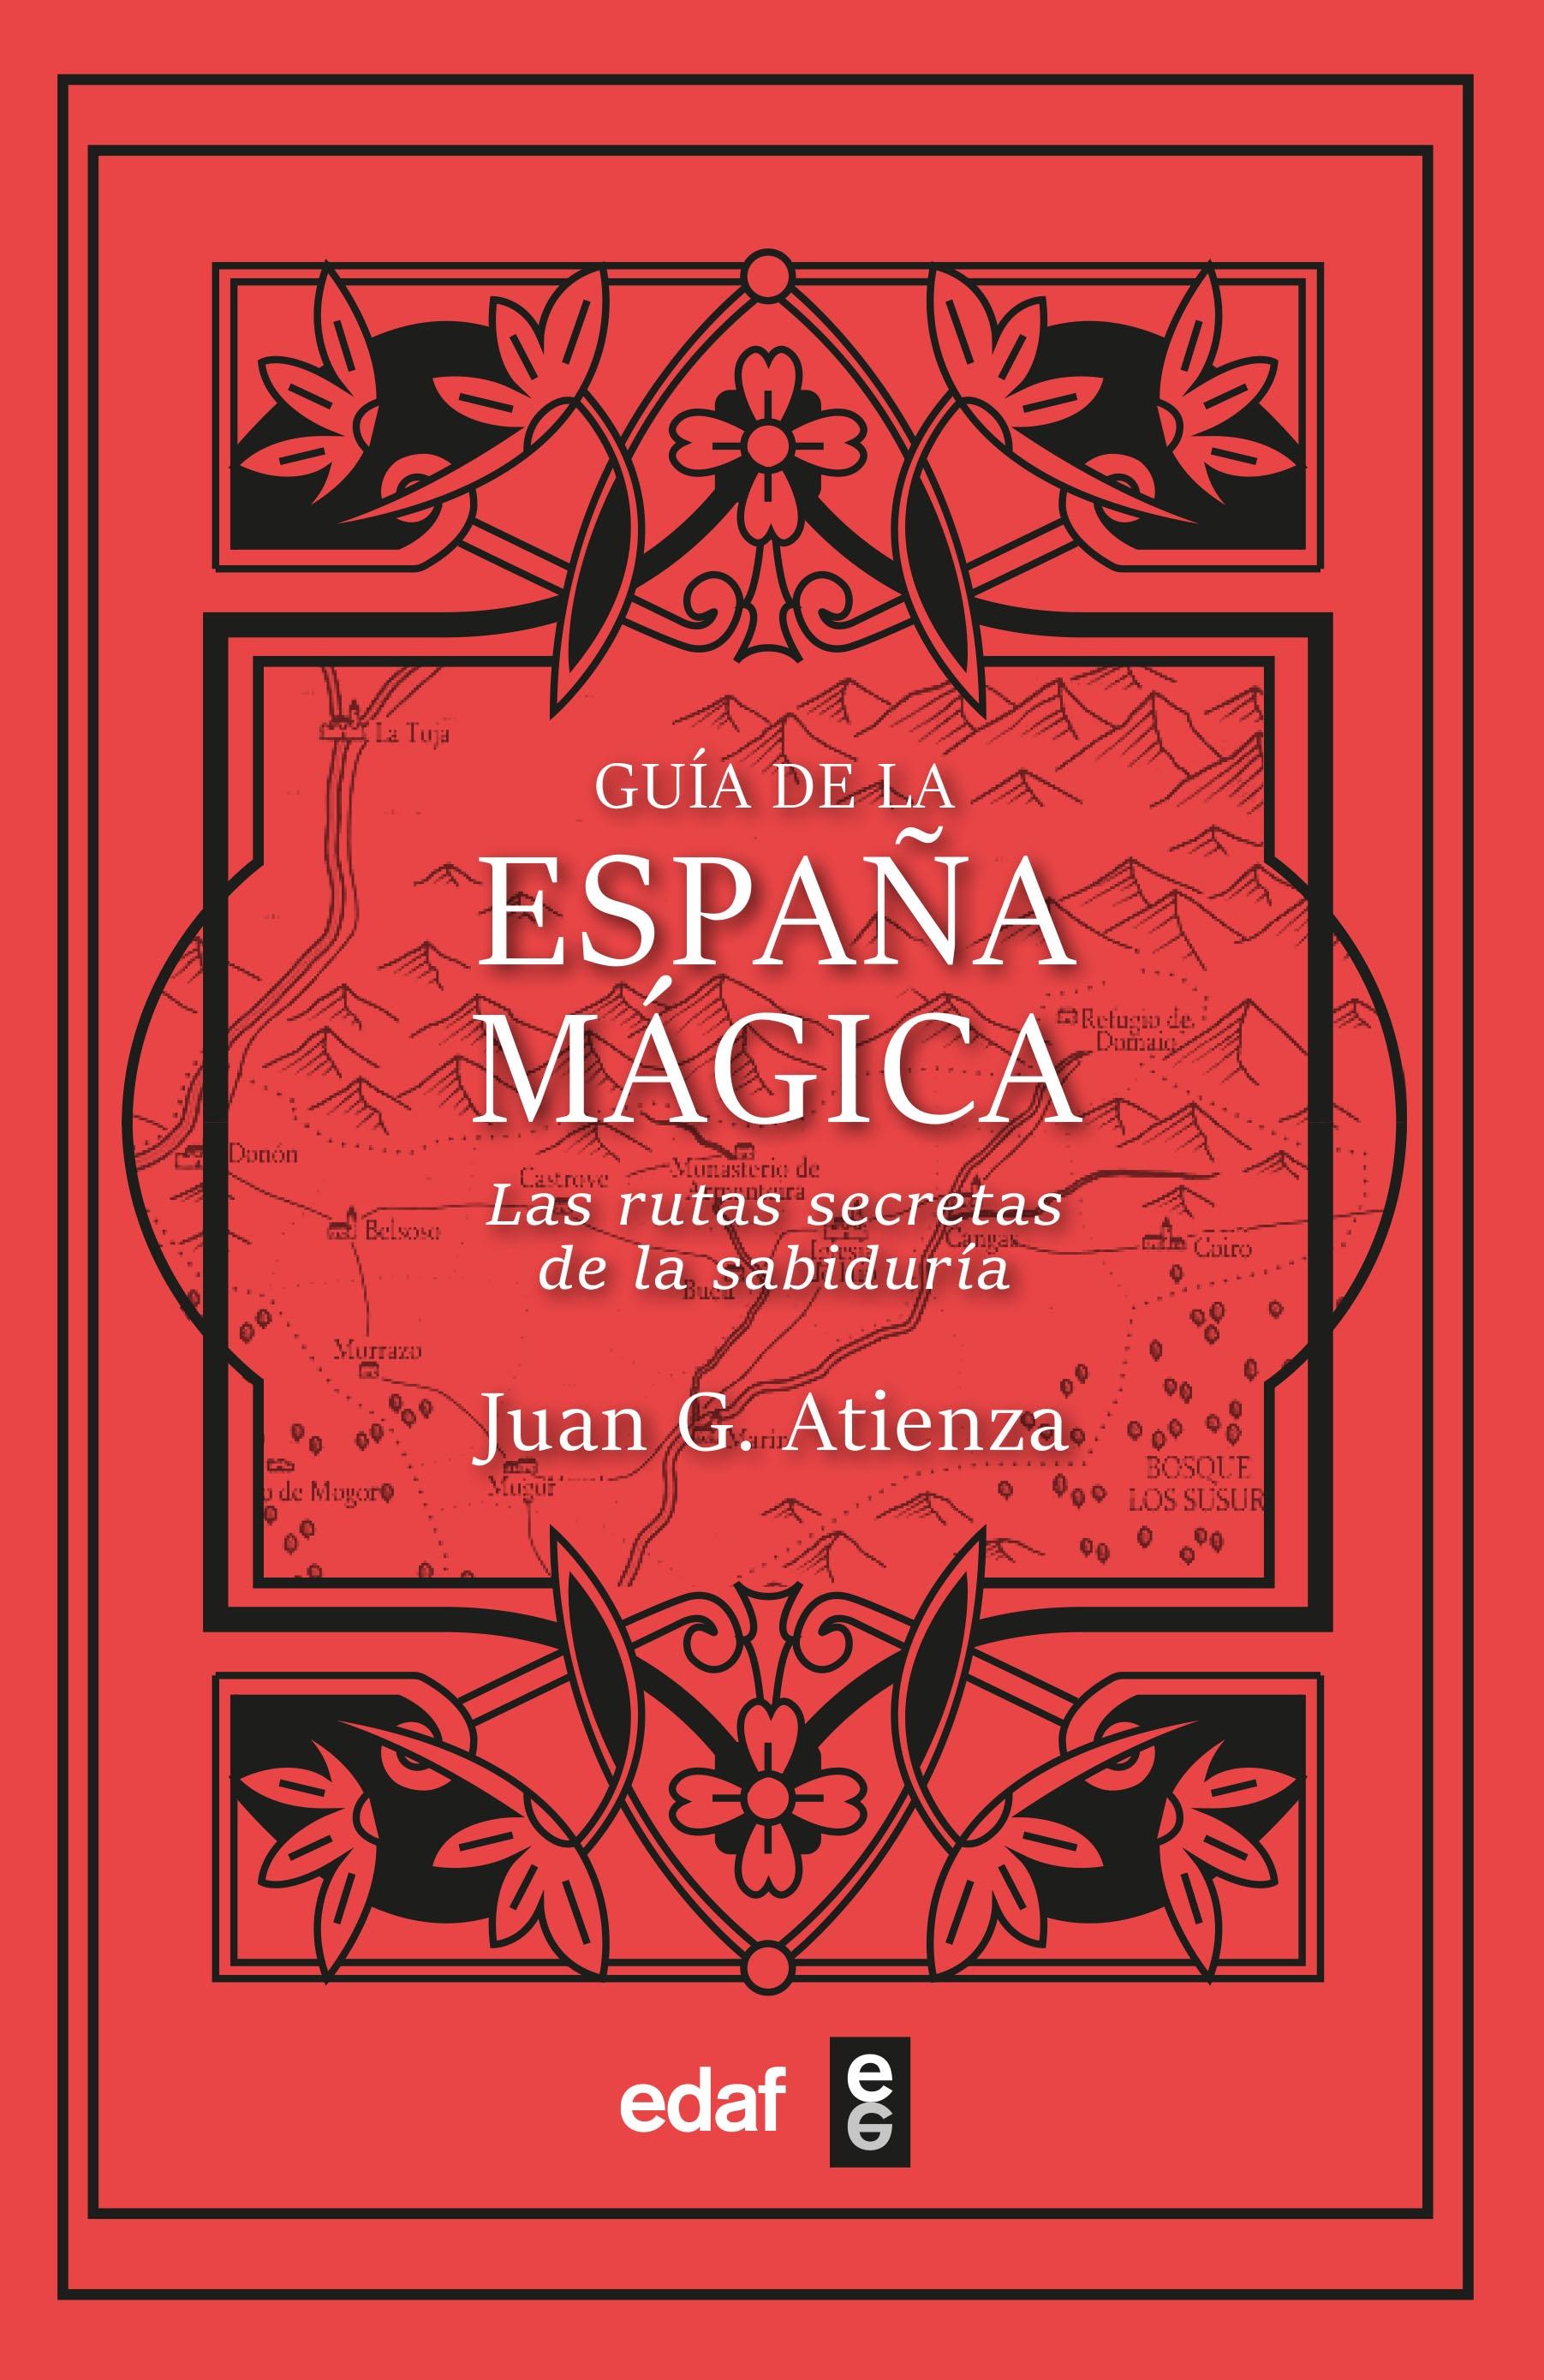 Guía de la España mágica "Las rutas secretas de la sabiduría"